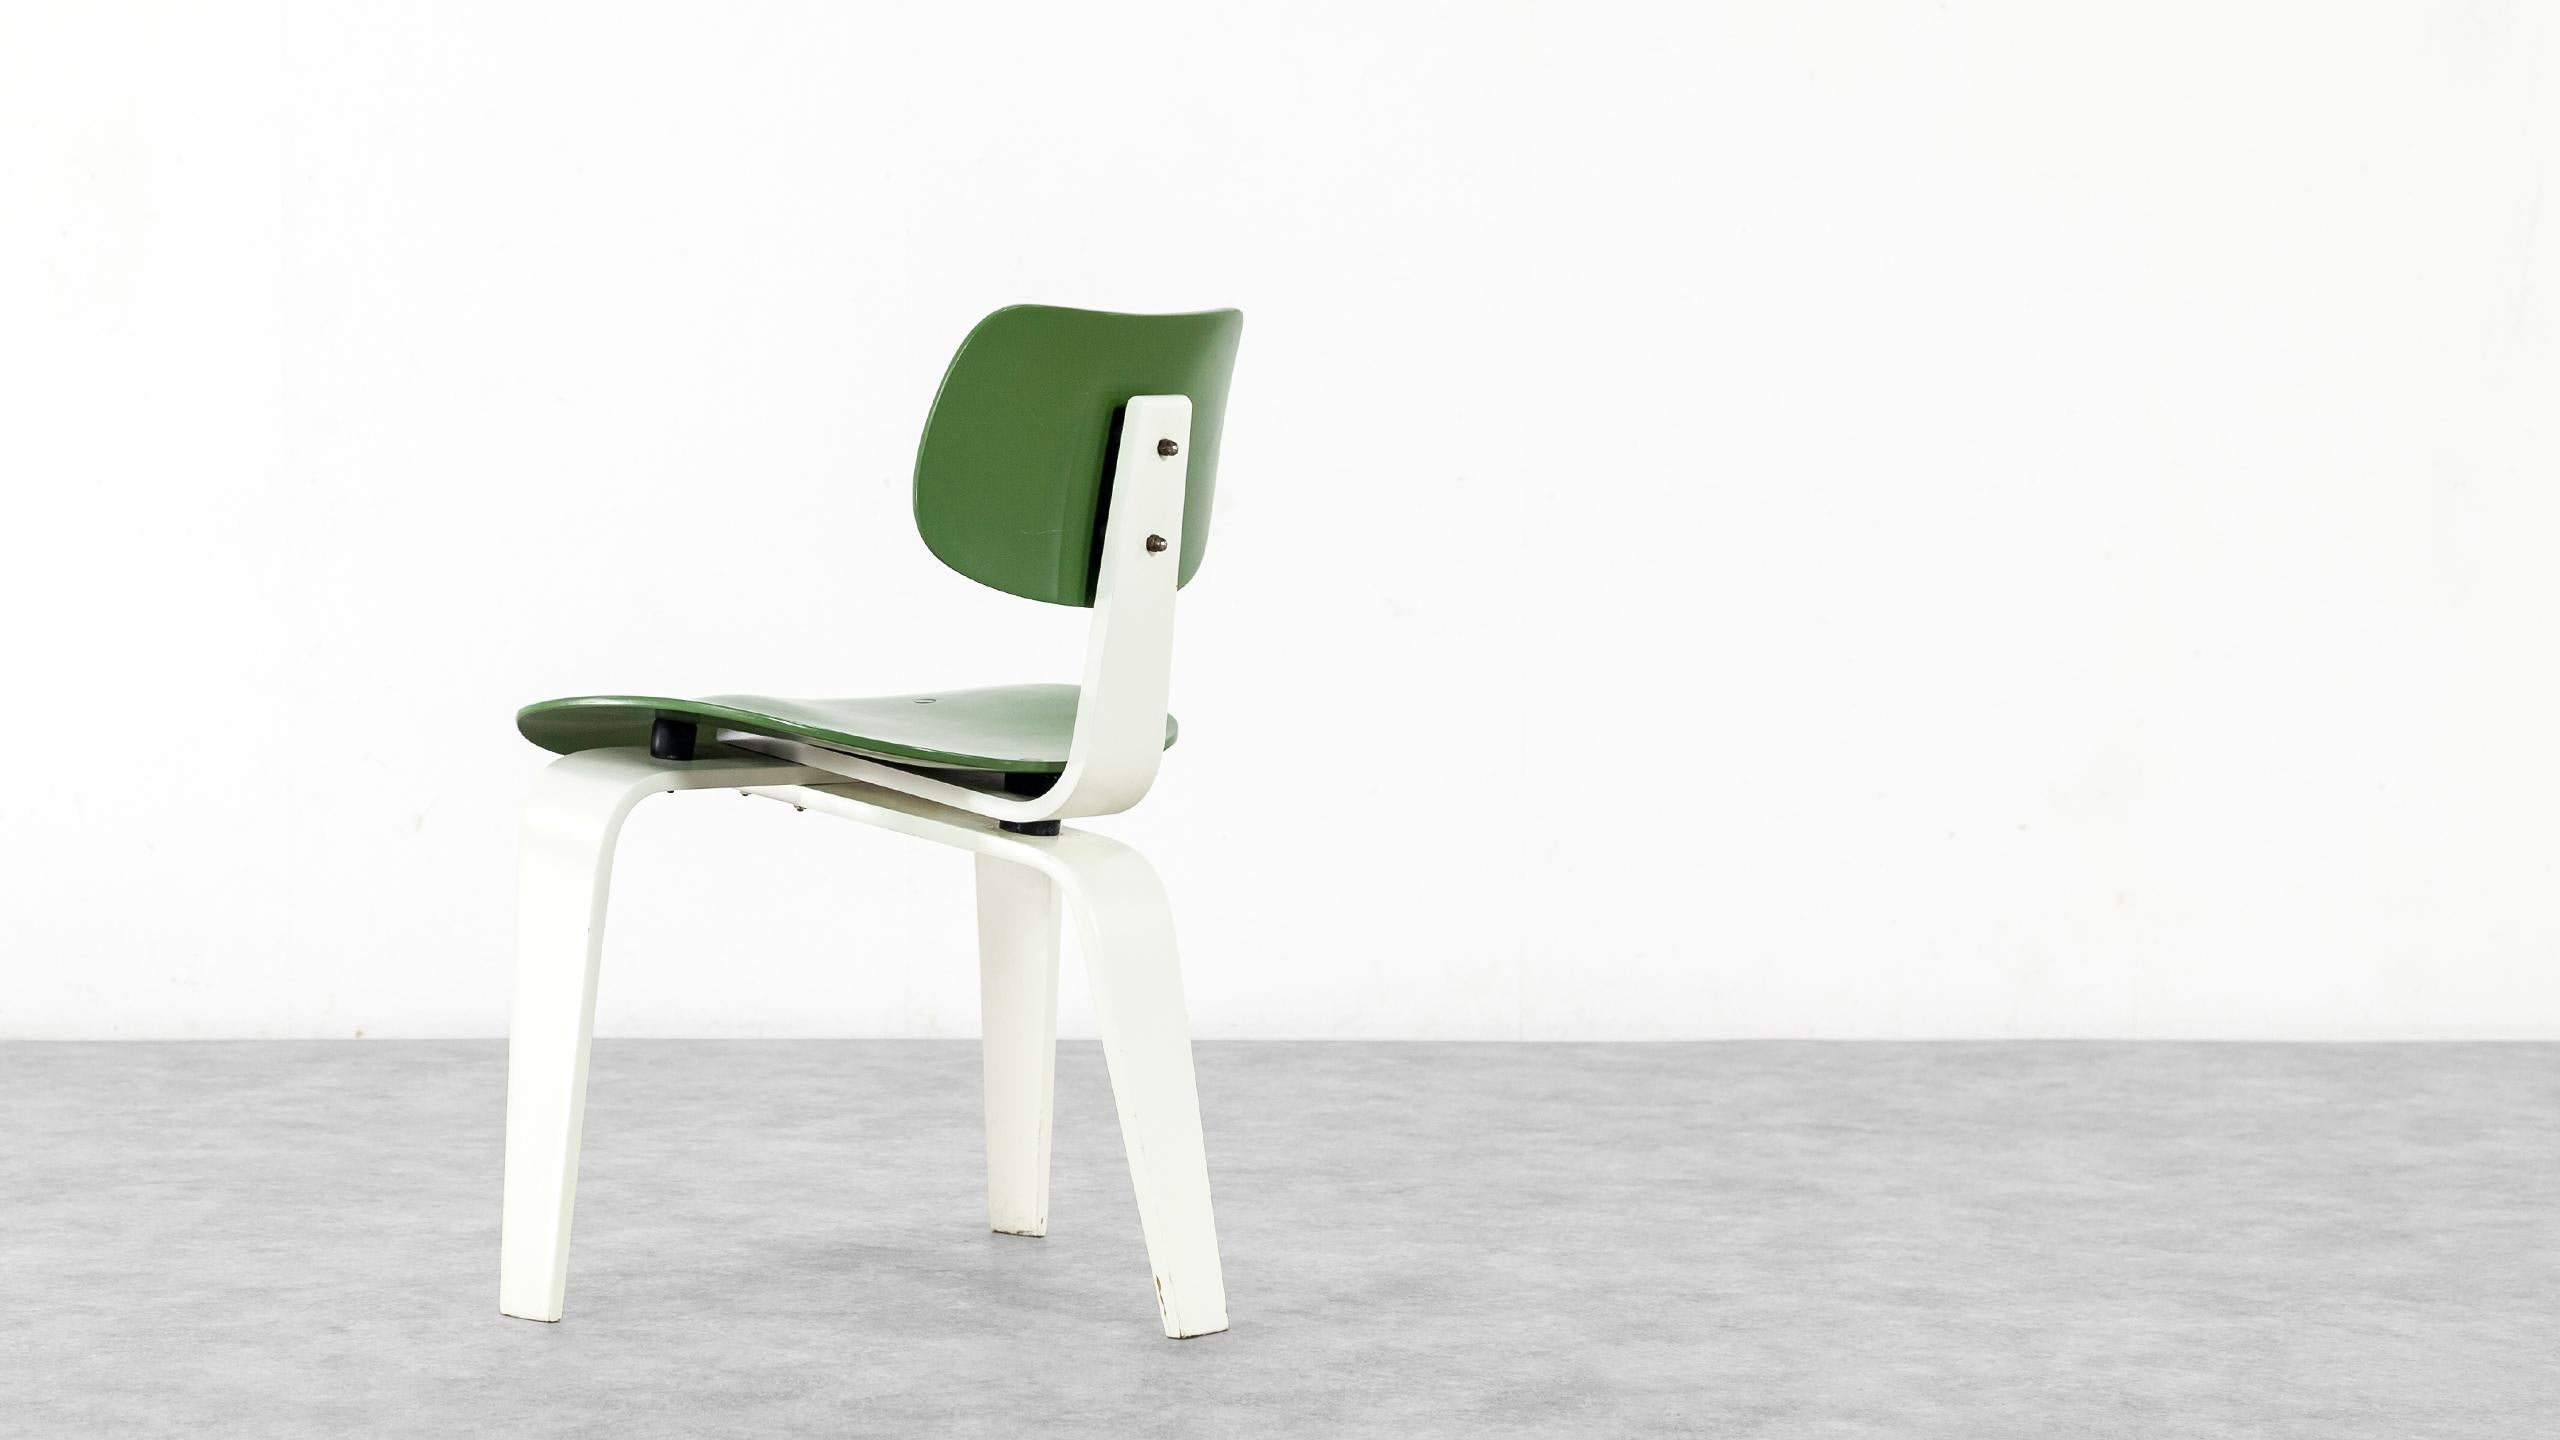 Mid-Century Modern Egon Eiermann, Plywood Chair SE 42, Germany 1955 Early Edition Wilde & Spieth